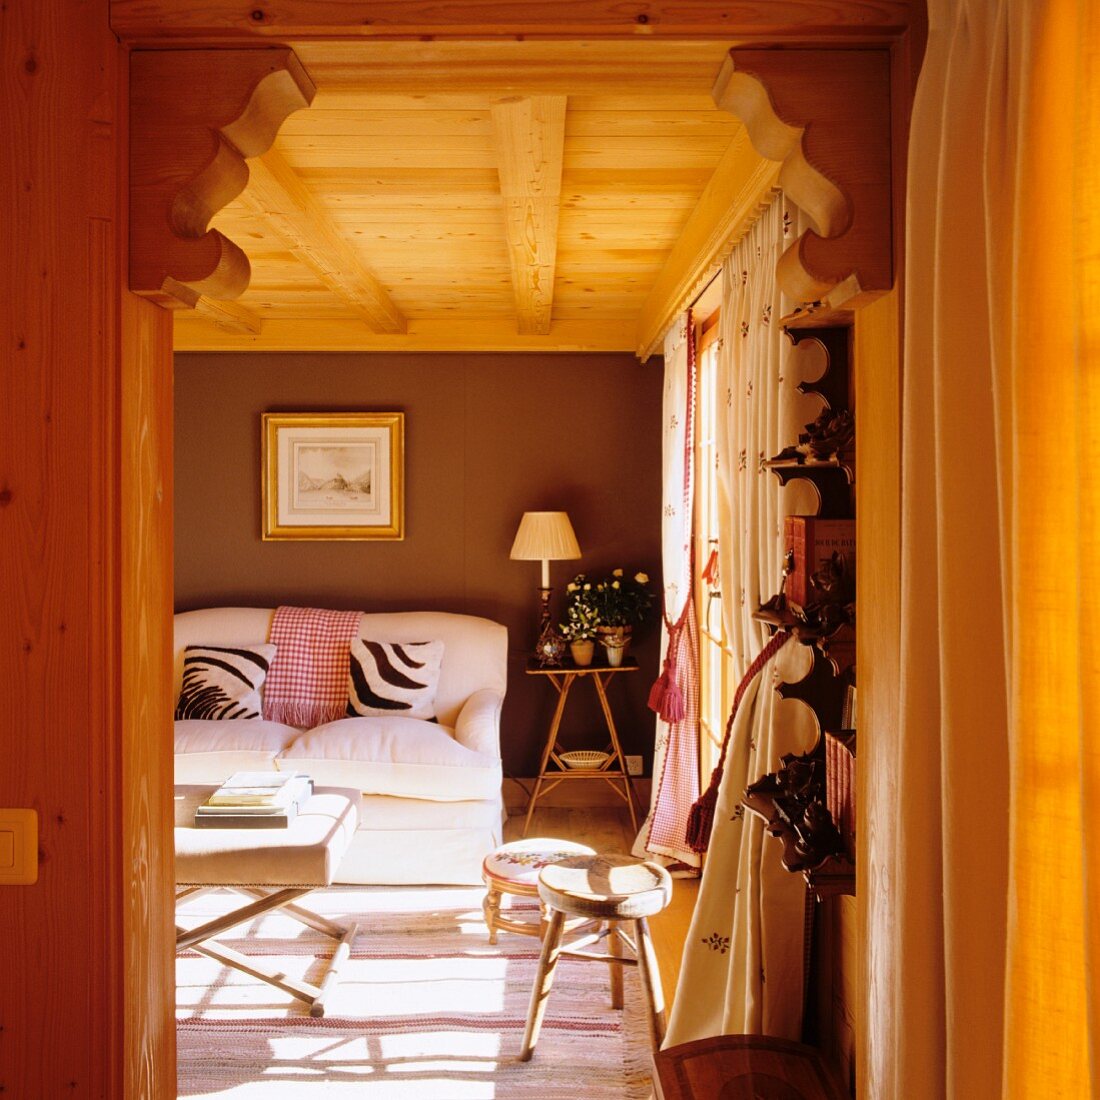 Blick auf weisses Polstersofa und Kissen im Zebralook im Wohnzimmer eines Holzhauses